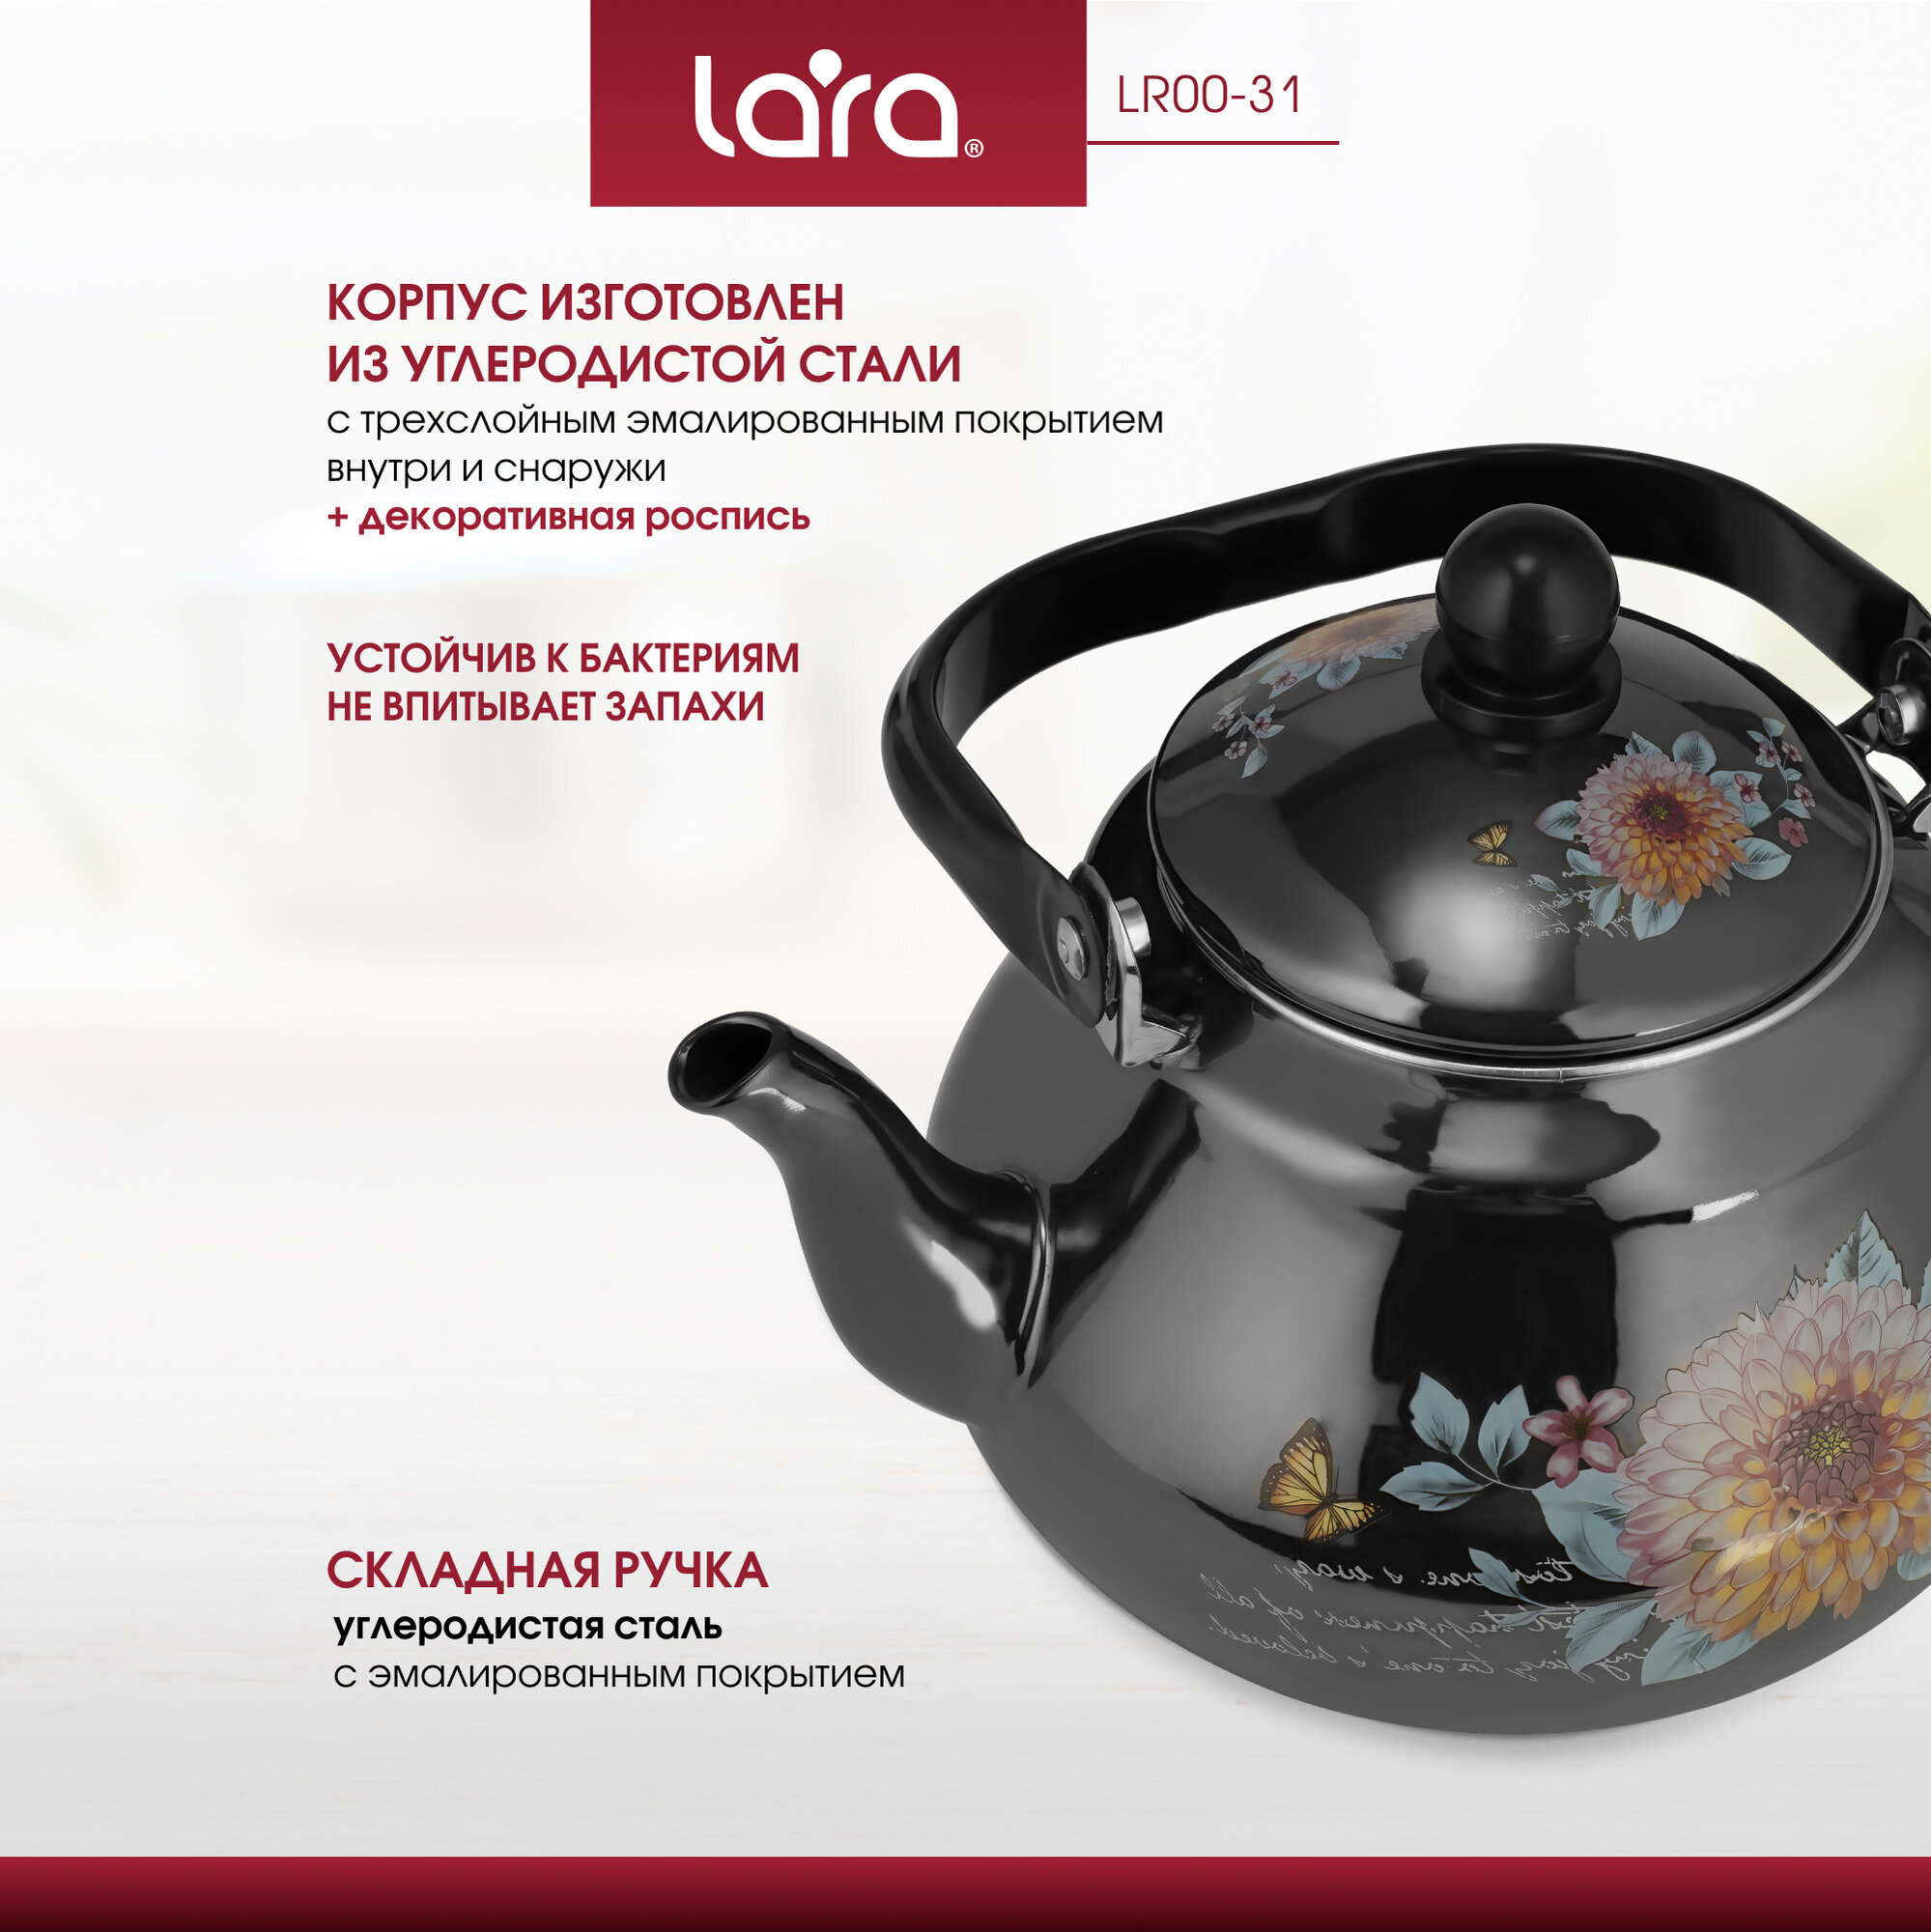 Чайник со свистком LARA LR00-31 (эмаль) 2.5л, глянец, складная ручка, 3 слойное покрытие, индукционное дно